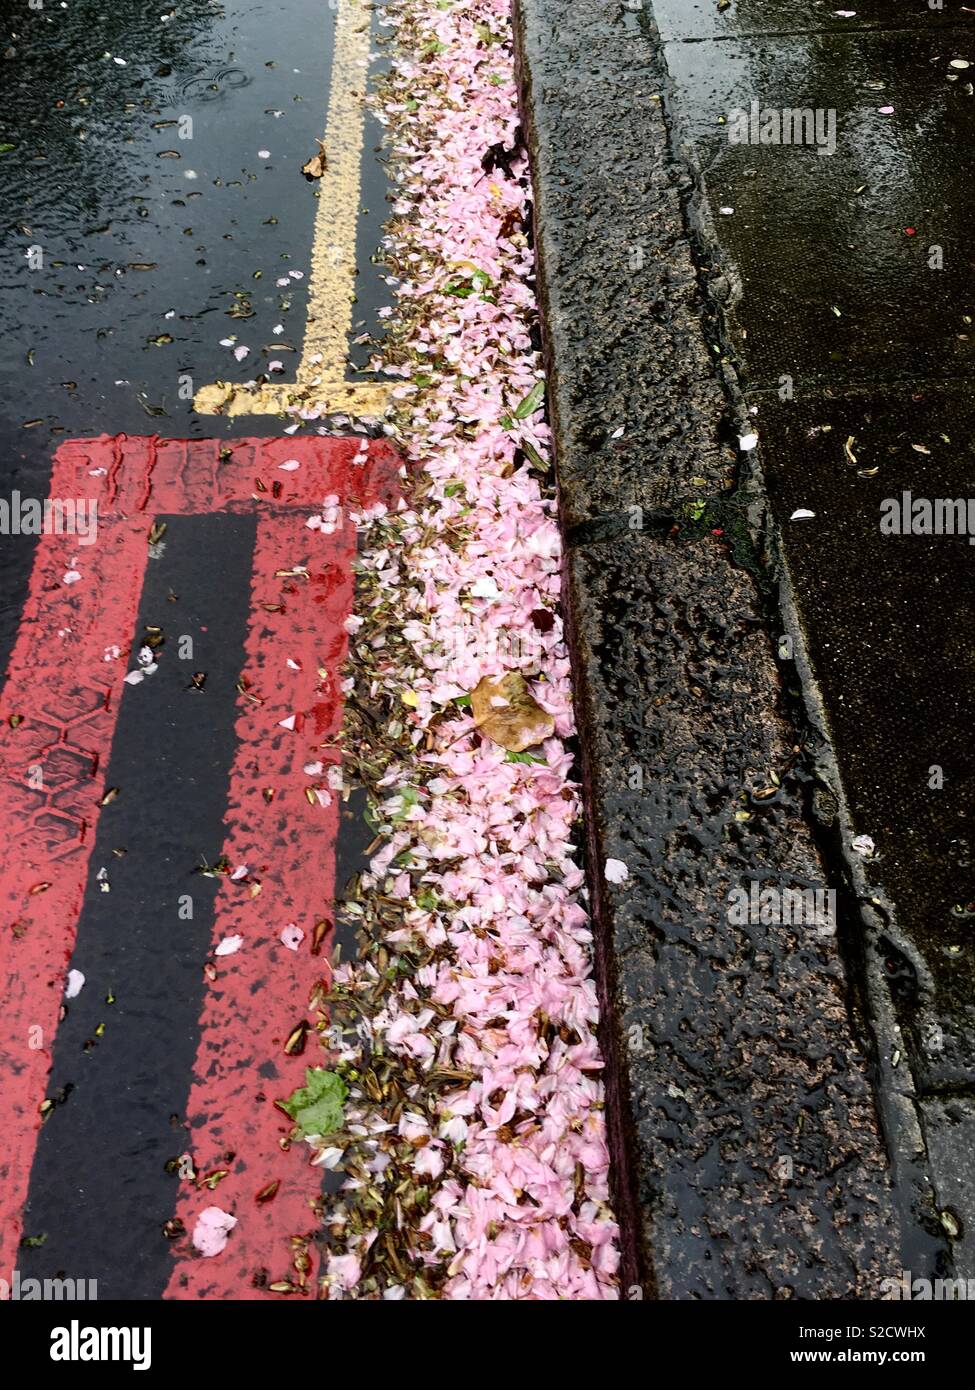 Blossom in street gutter Stock Photo